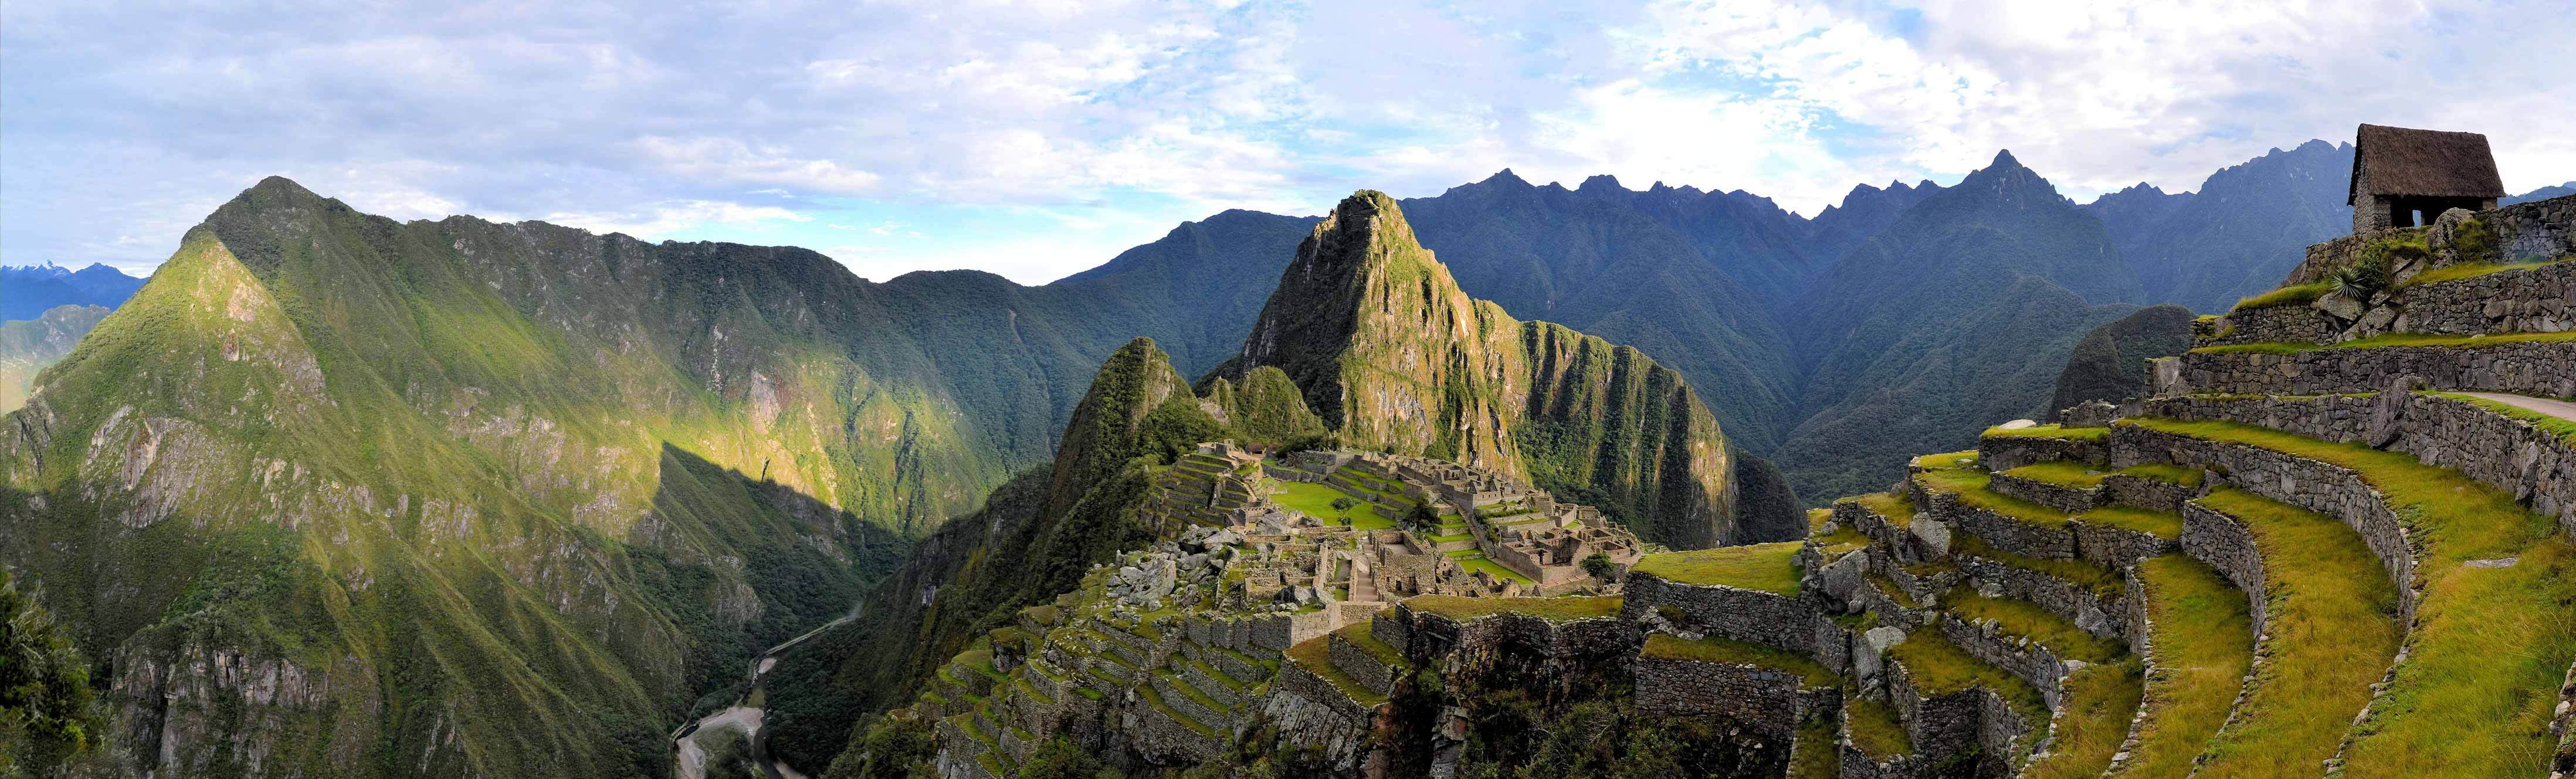 Machu Picchu, uno de los grandes tesoros de Perú.